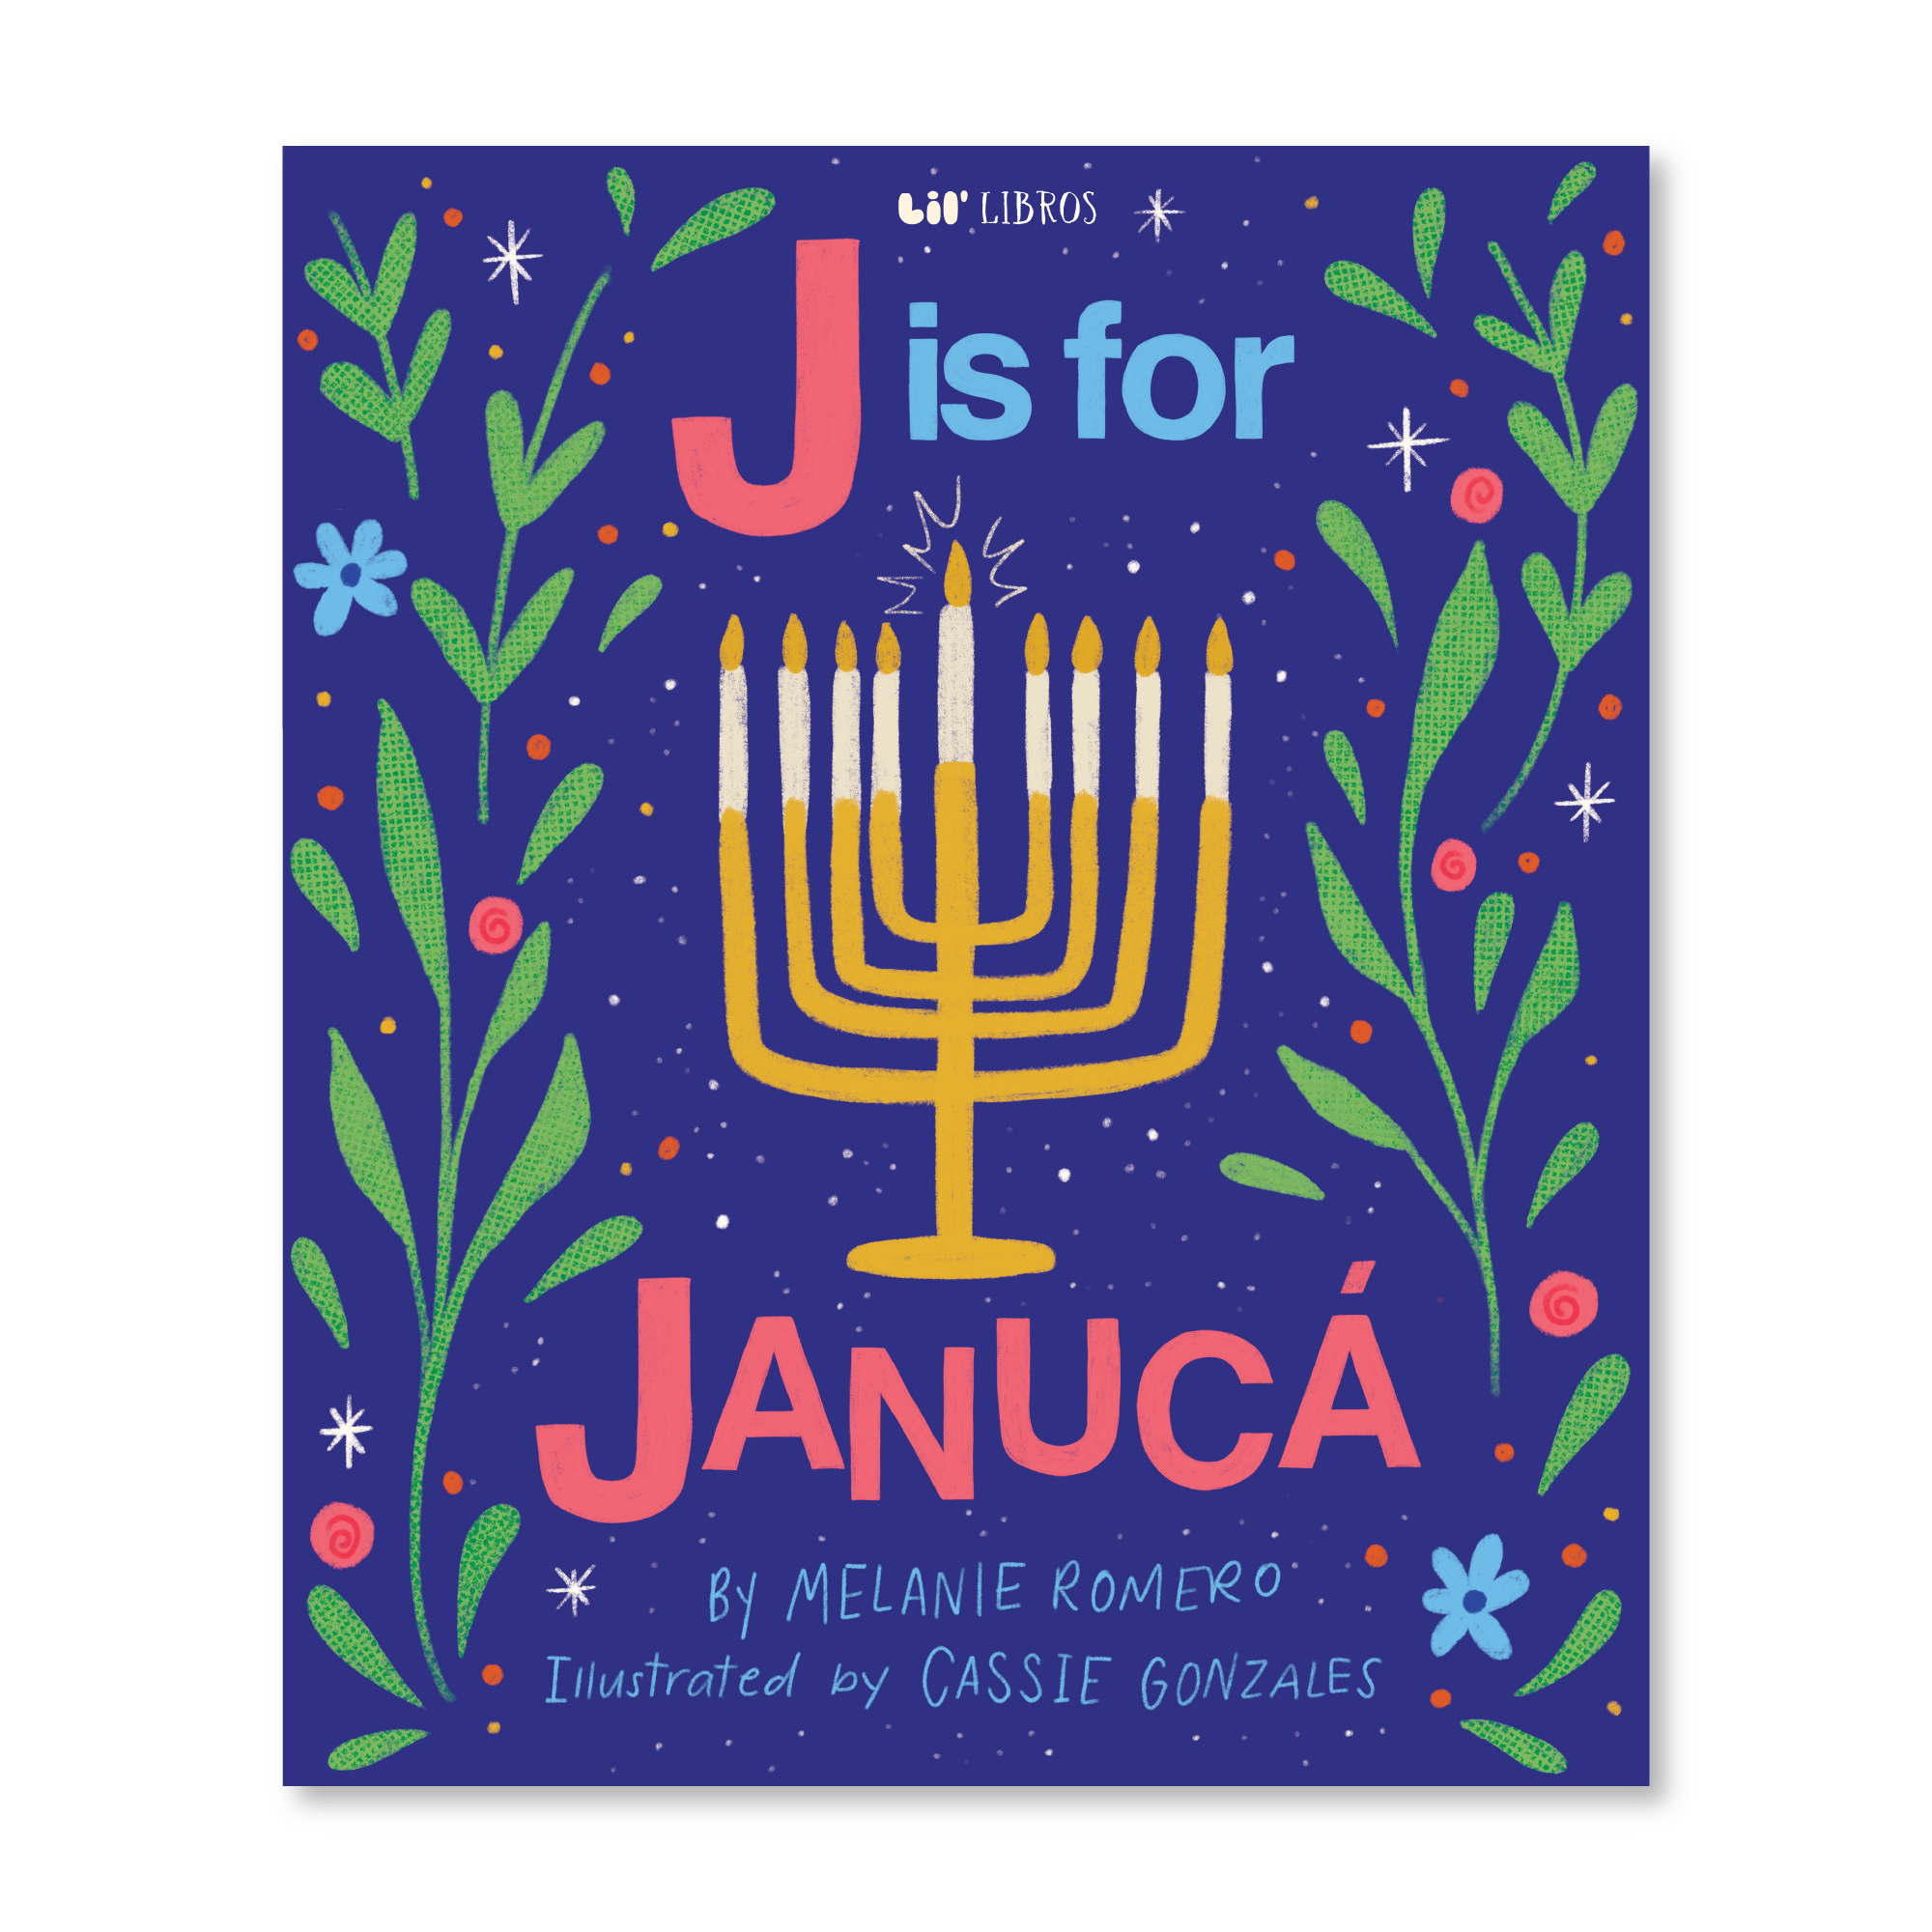 J is for Janucá